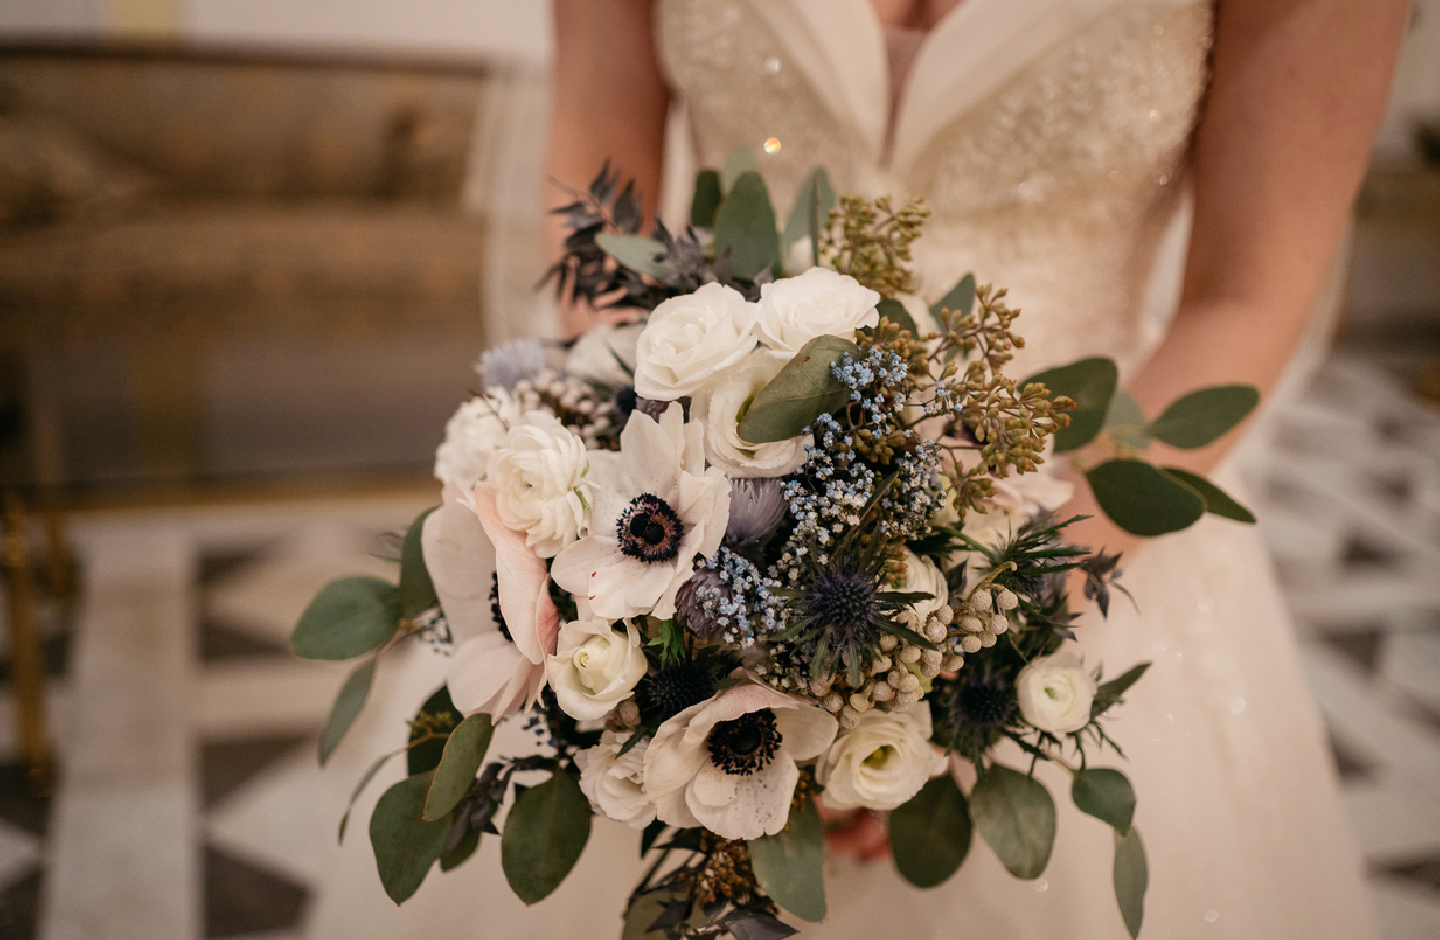 Brautstrauß mit Anemonen, Ranunkeln und Rosen in Weiß